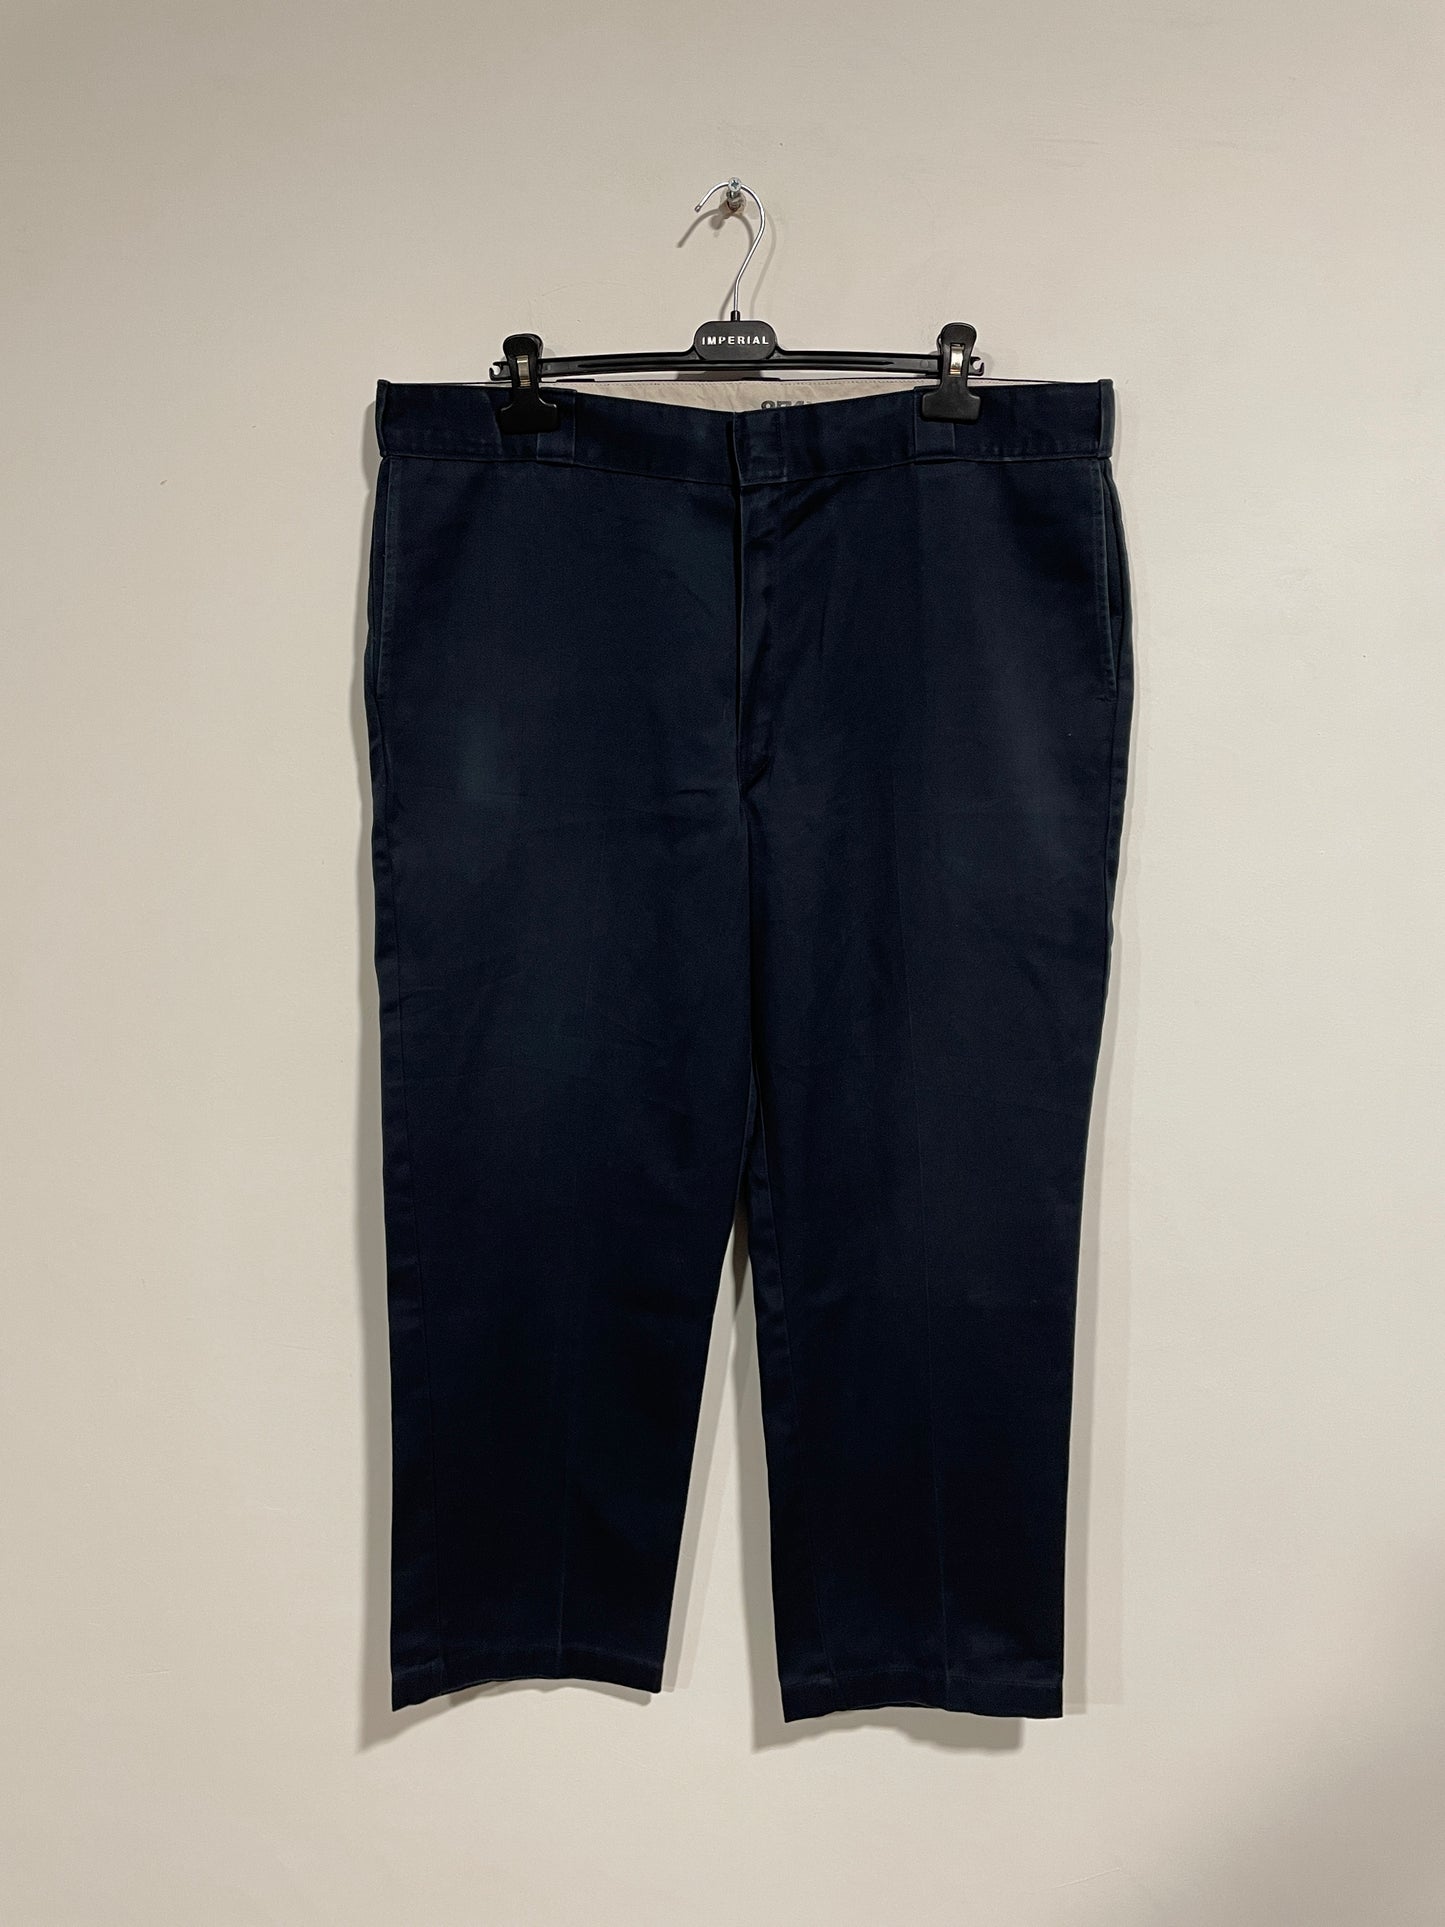 Pantalone Dickies 874 (B195)